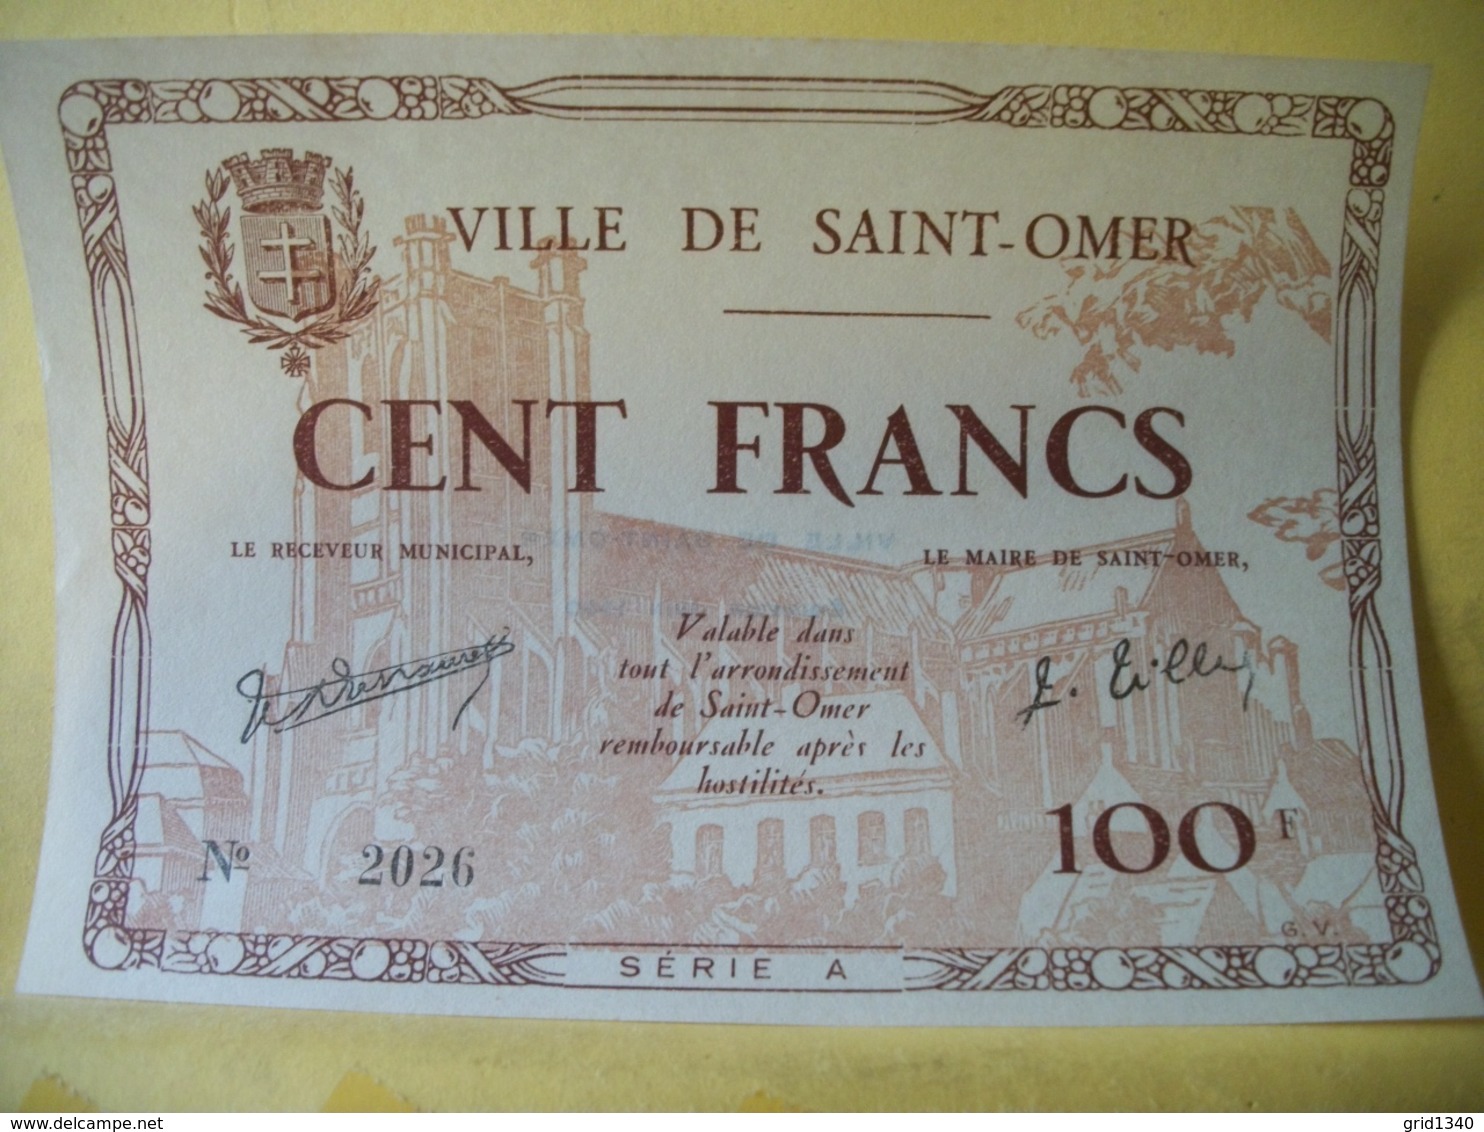 A915 - 62 VILLE DE SAINT OMER. CENT FRANCS. JUIN 1940. SERIE A N° 2026 - Bons & Nécessité